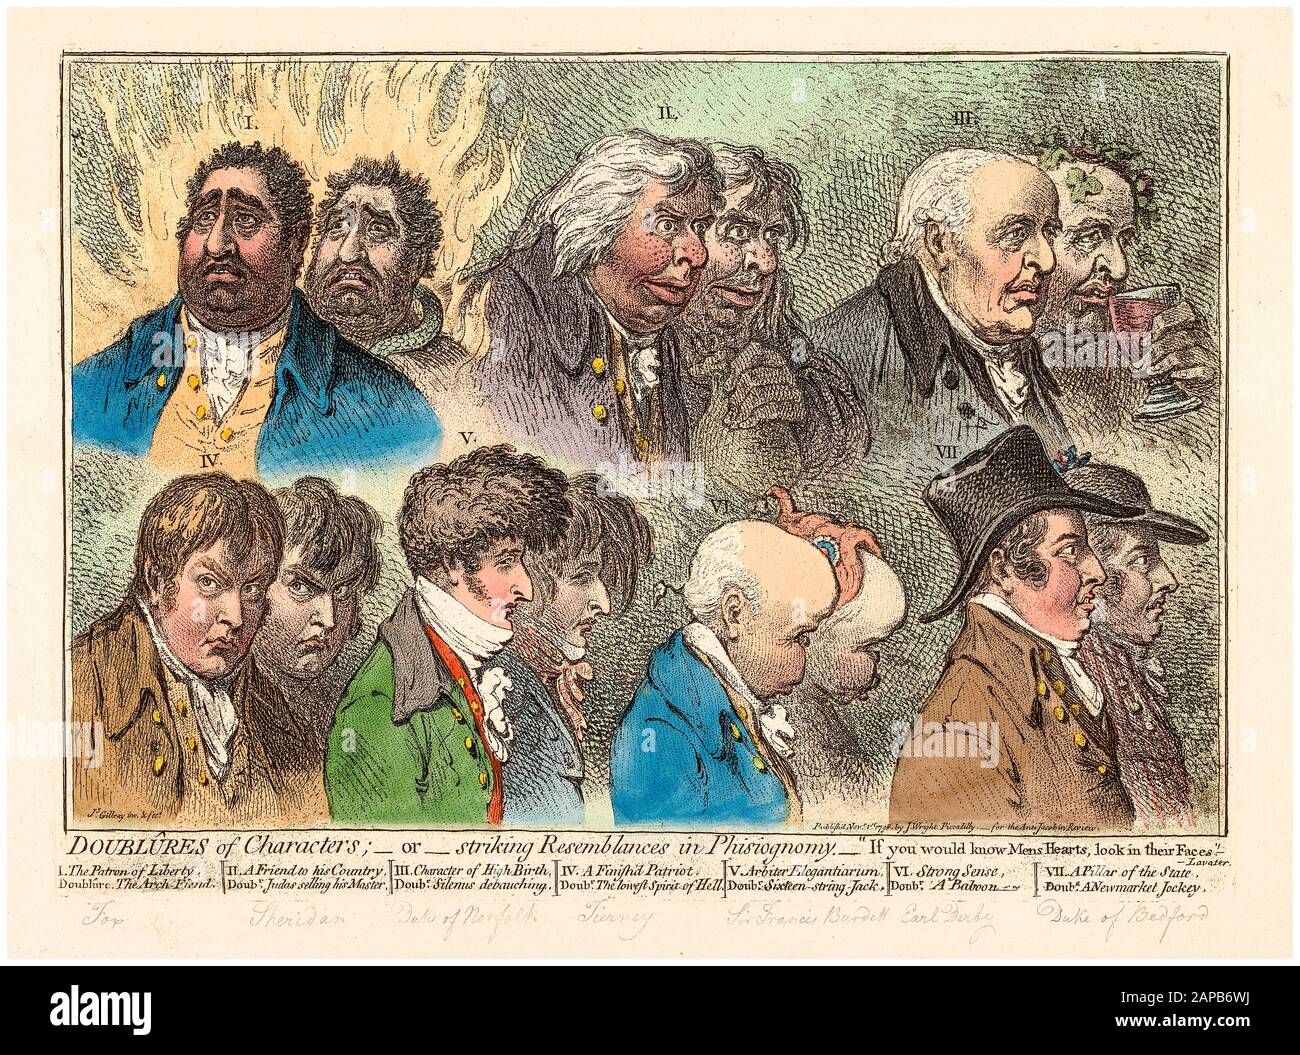 Doublûres Di Personaggi o Sorprendente Somiglianza in Phisiognomy, incisione di James Gilray, 1798 Foto Stock